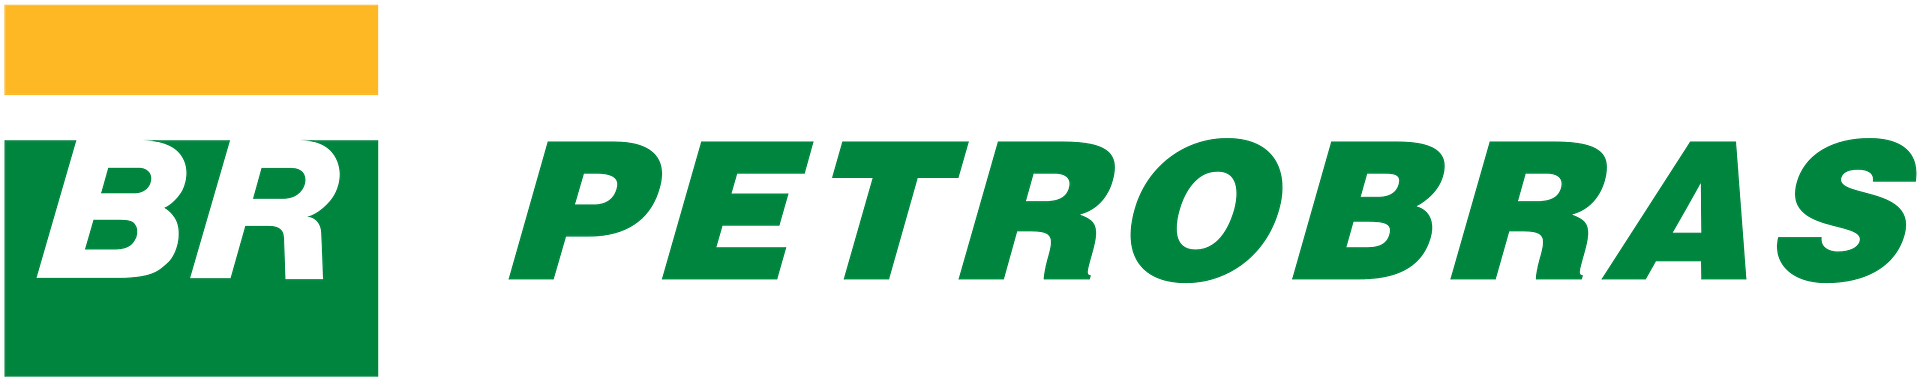 petro-logo